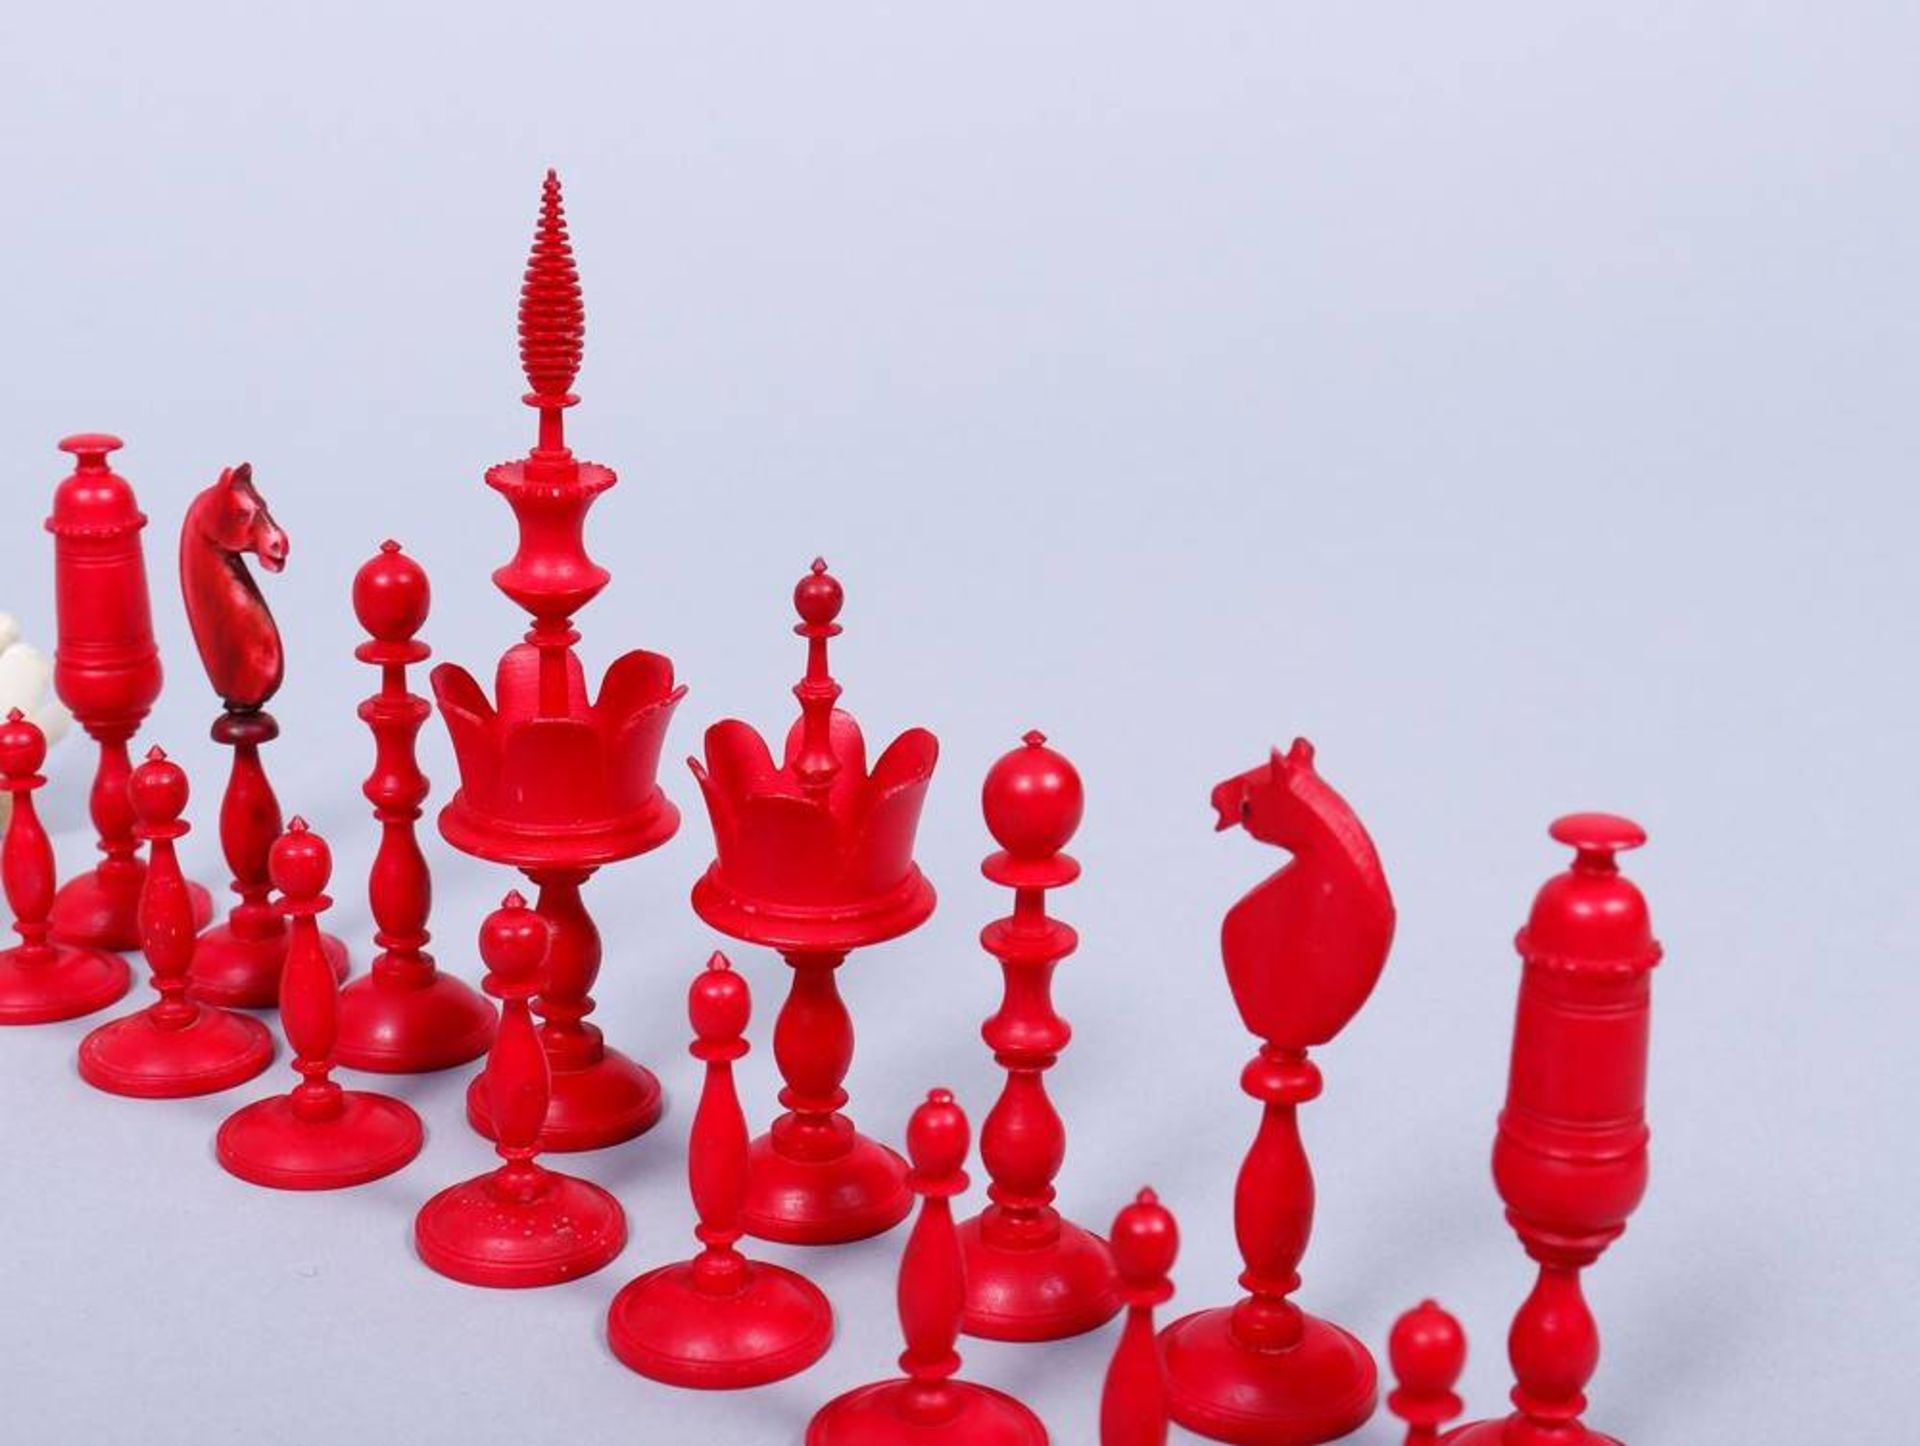 Schachfiguren, wohl Nürnberg, 19.Jh. Einkorbsatz, Elfenbein, partiell rot gefärbt, H 3,5-9,5cm, 1 - Bild 2 aus 3